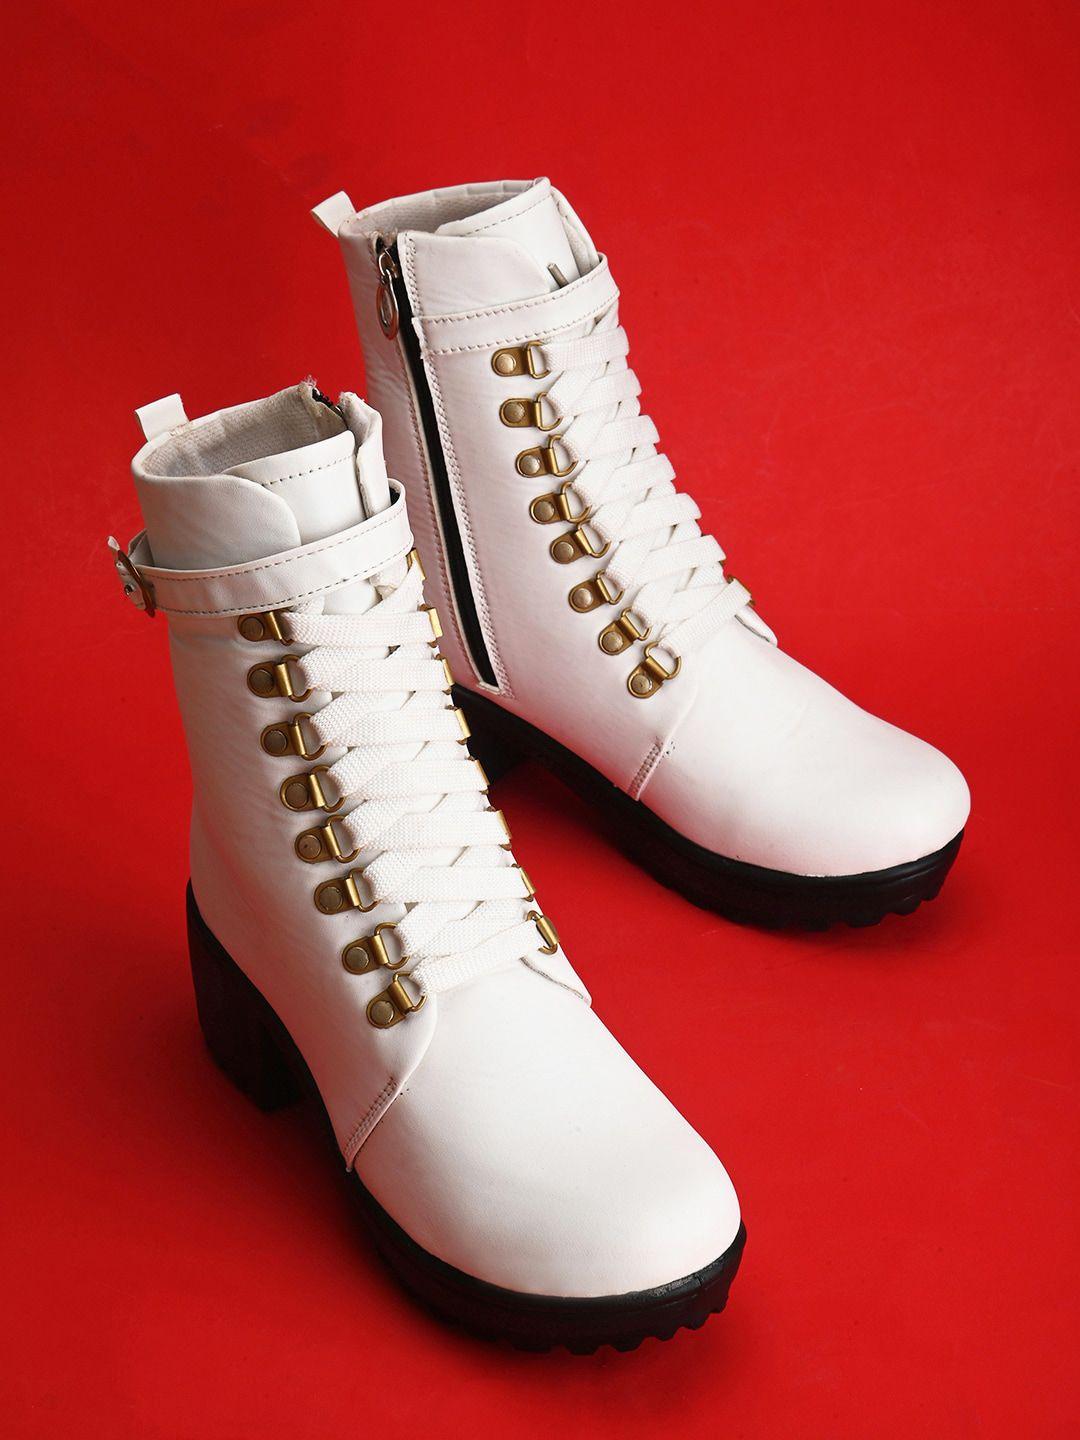 longwalk women mid top platform heel regular boots with buckle detail